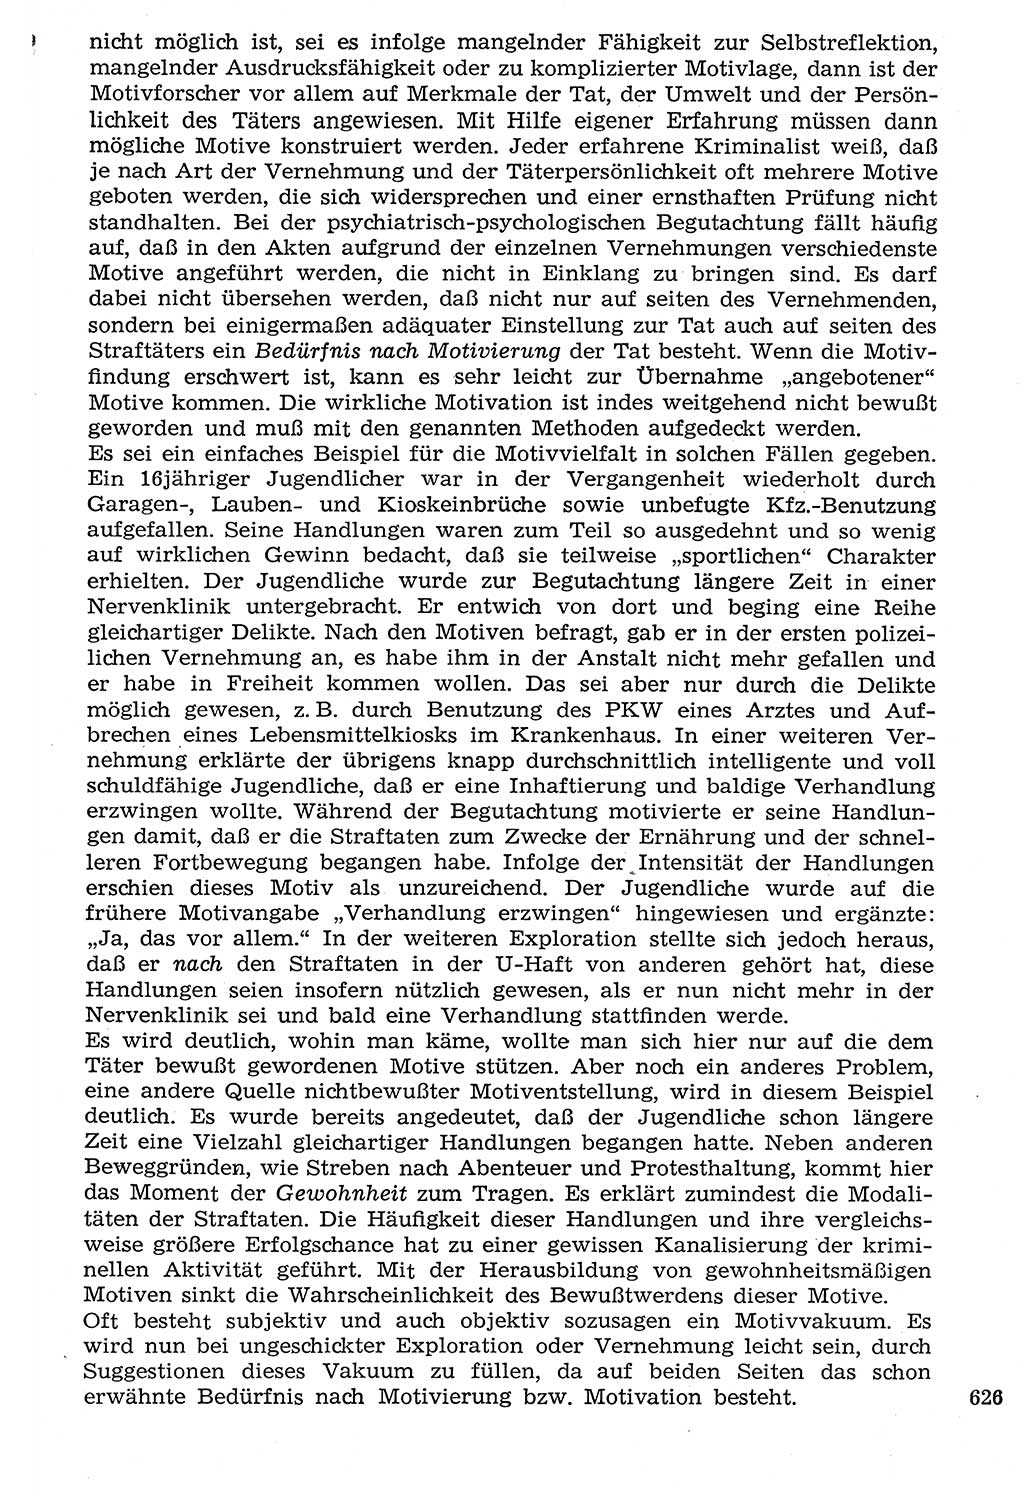 Staat und Recht (StuR), 17. Jahrgang [Deutsche Demokratische Republik (DDR)] 1968, Seite 626 (StuR DDR 1968, S. 626)